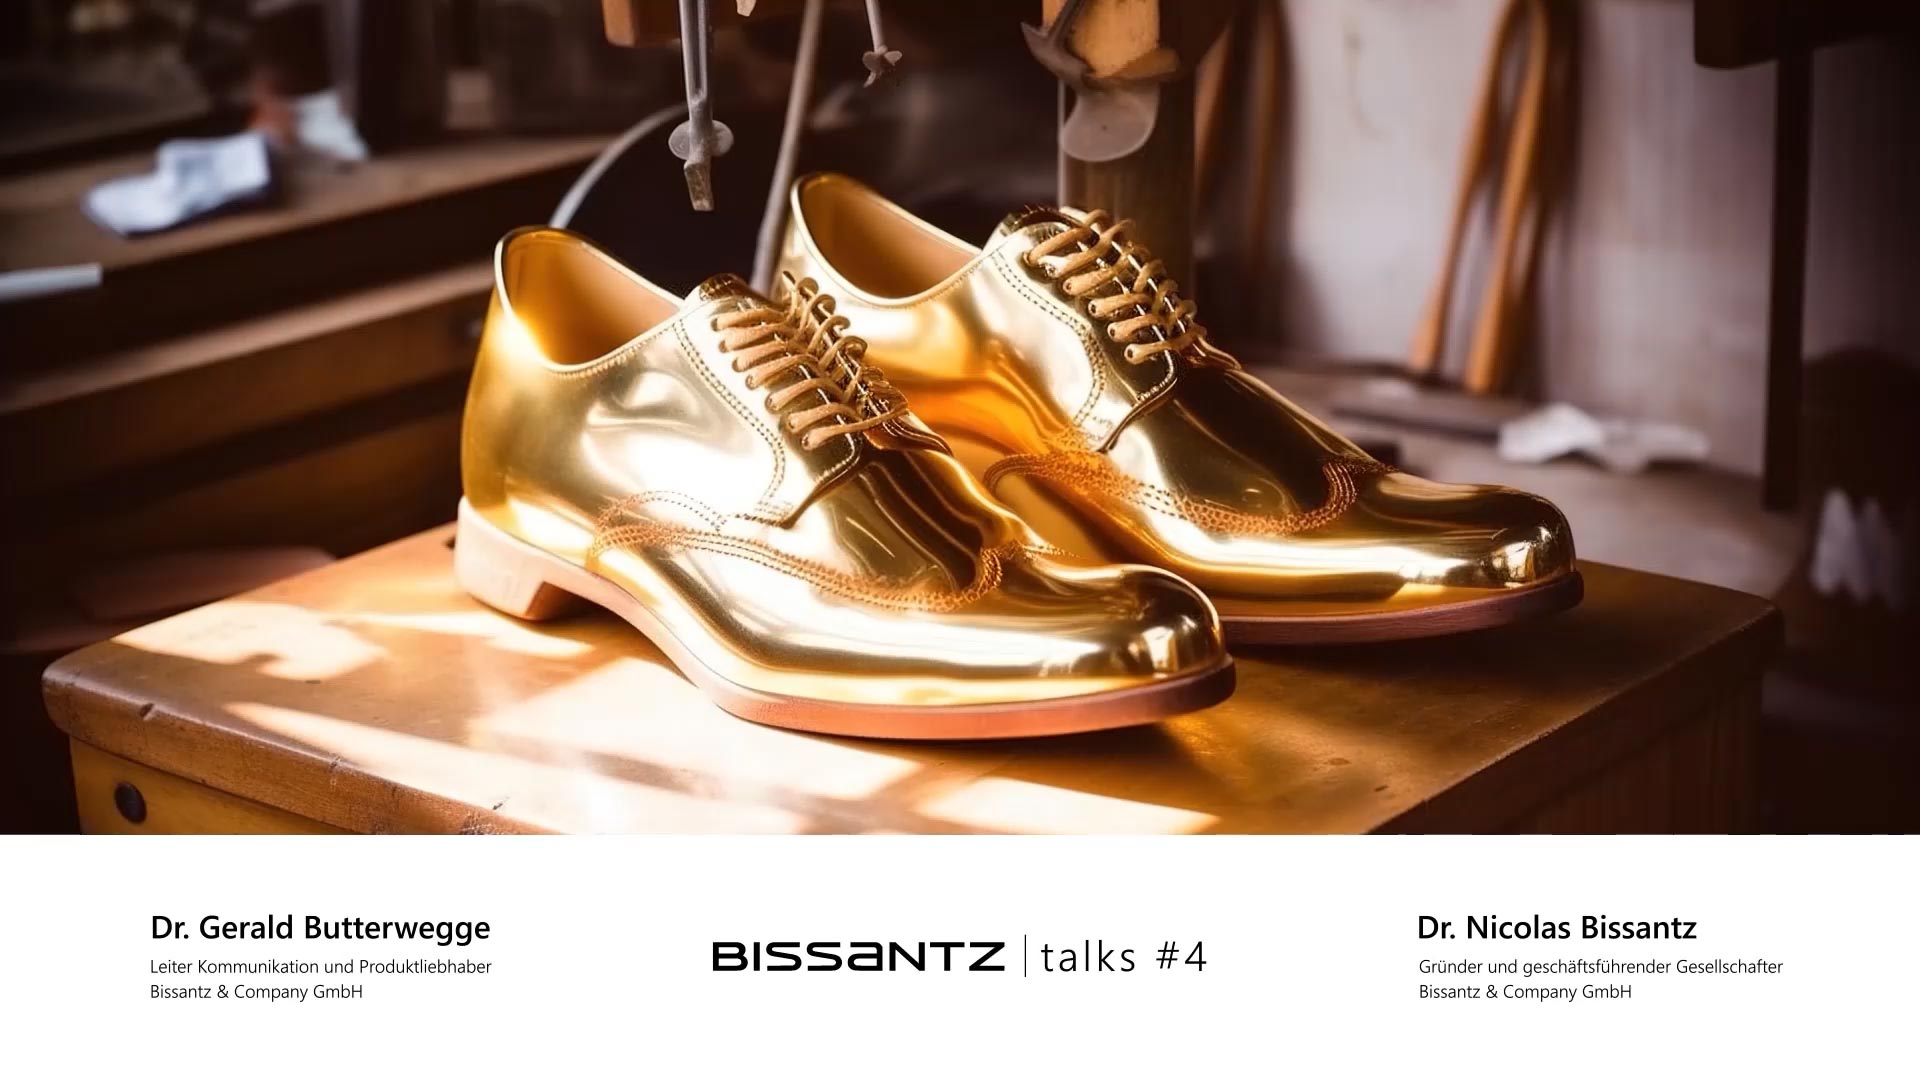 Bissantz Talks: Hat der Schuster doch die besten Schuhe? - Webinaraufzeichnung